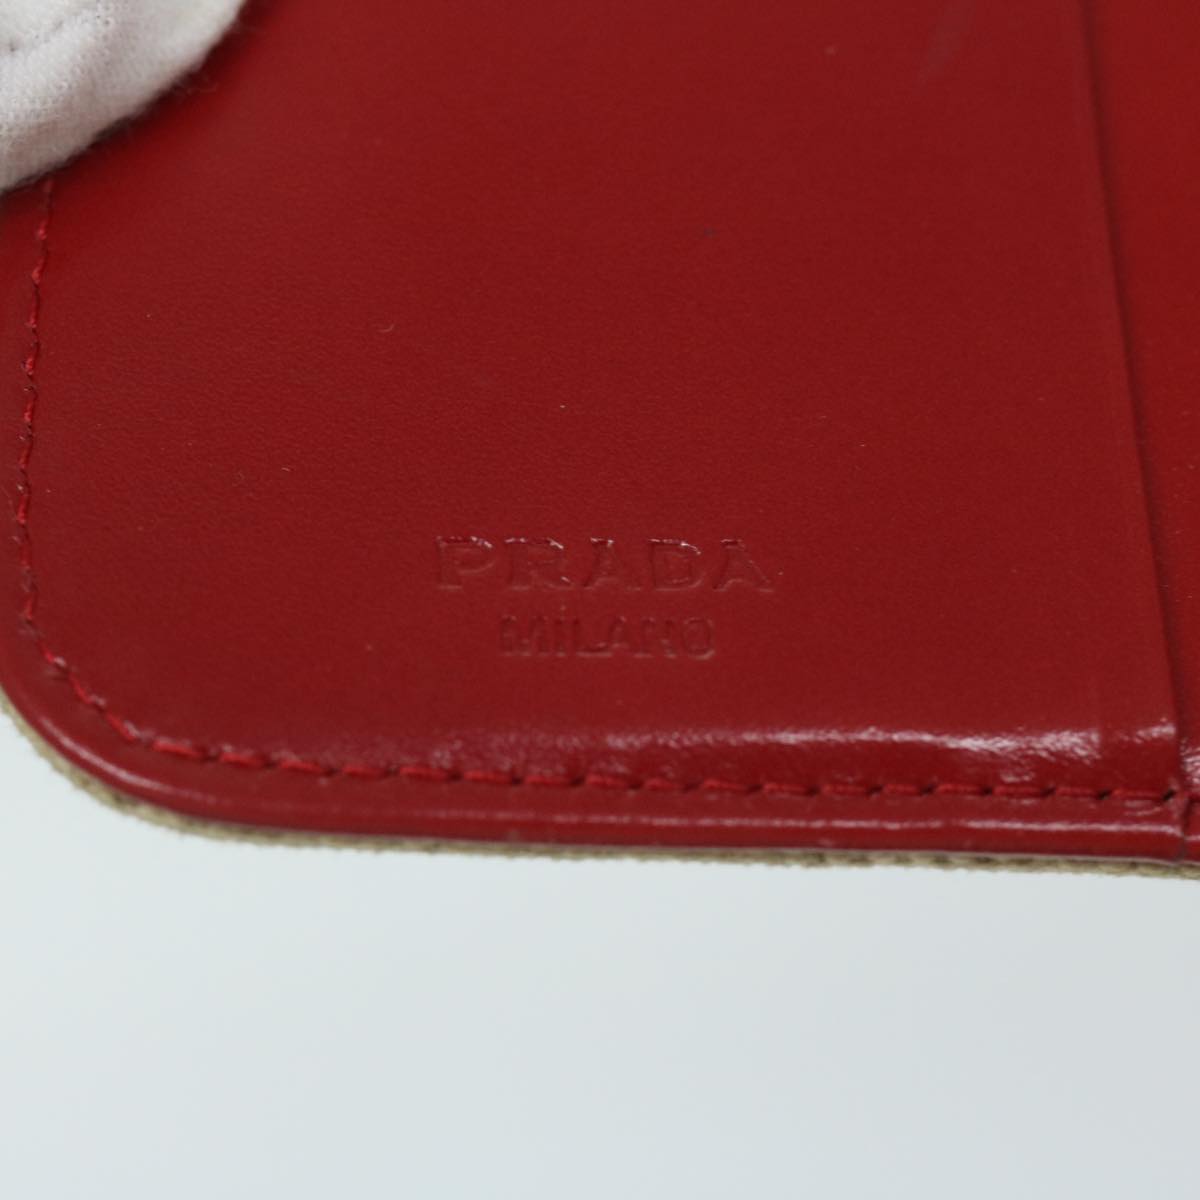 PRADA Wallet Canvas Beige Red Auth 67550